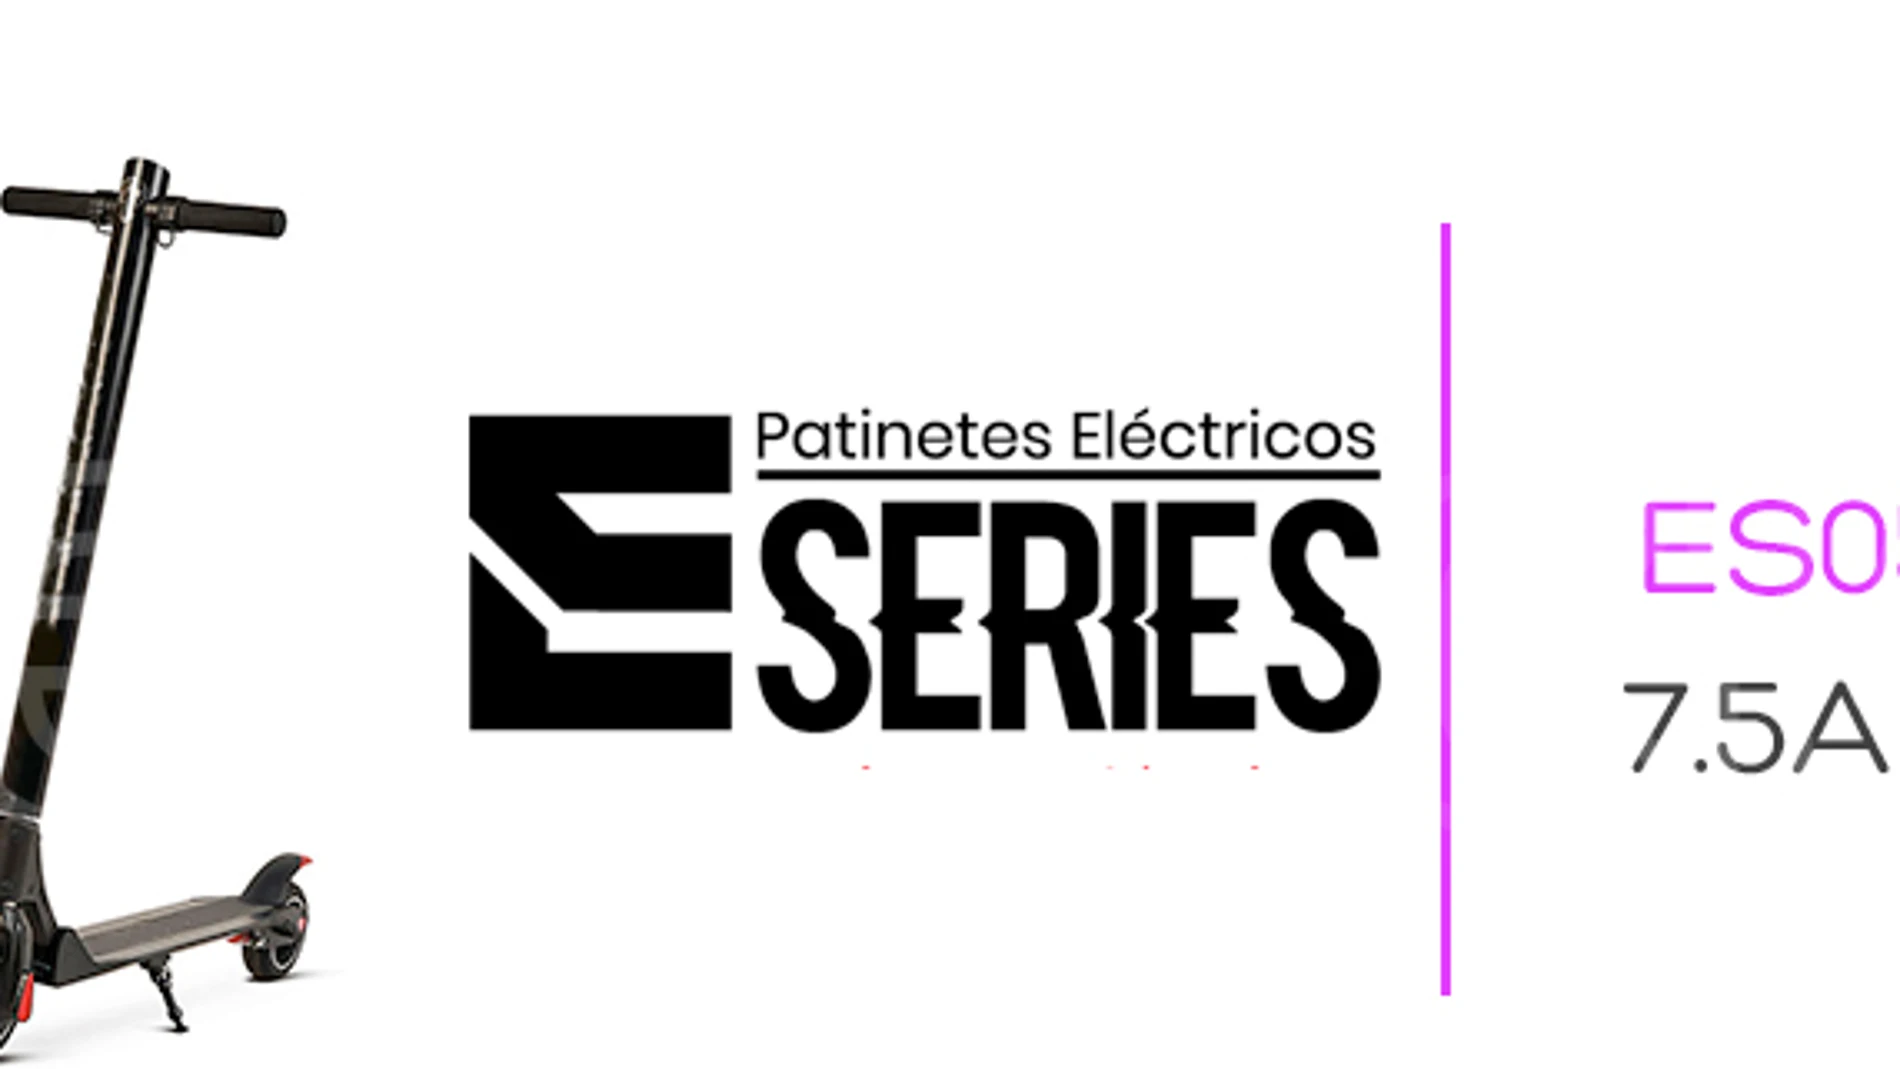 E-Series, la marca blanca de patinetes eléctricos más asequible del mercado